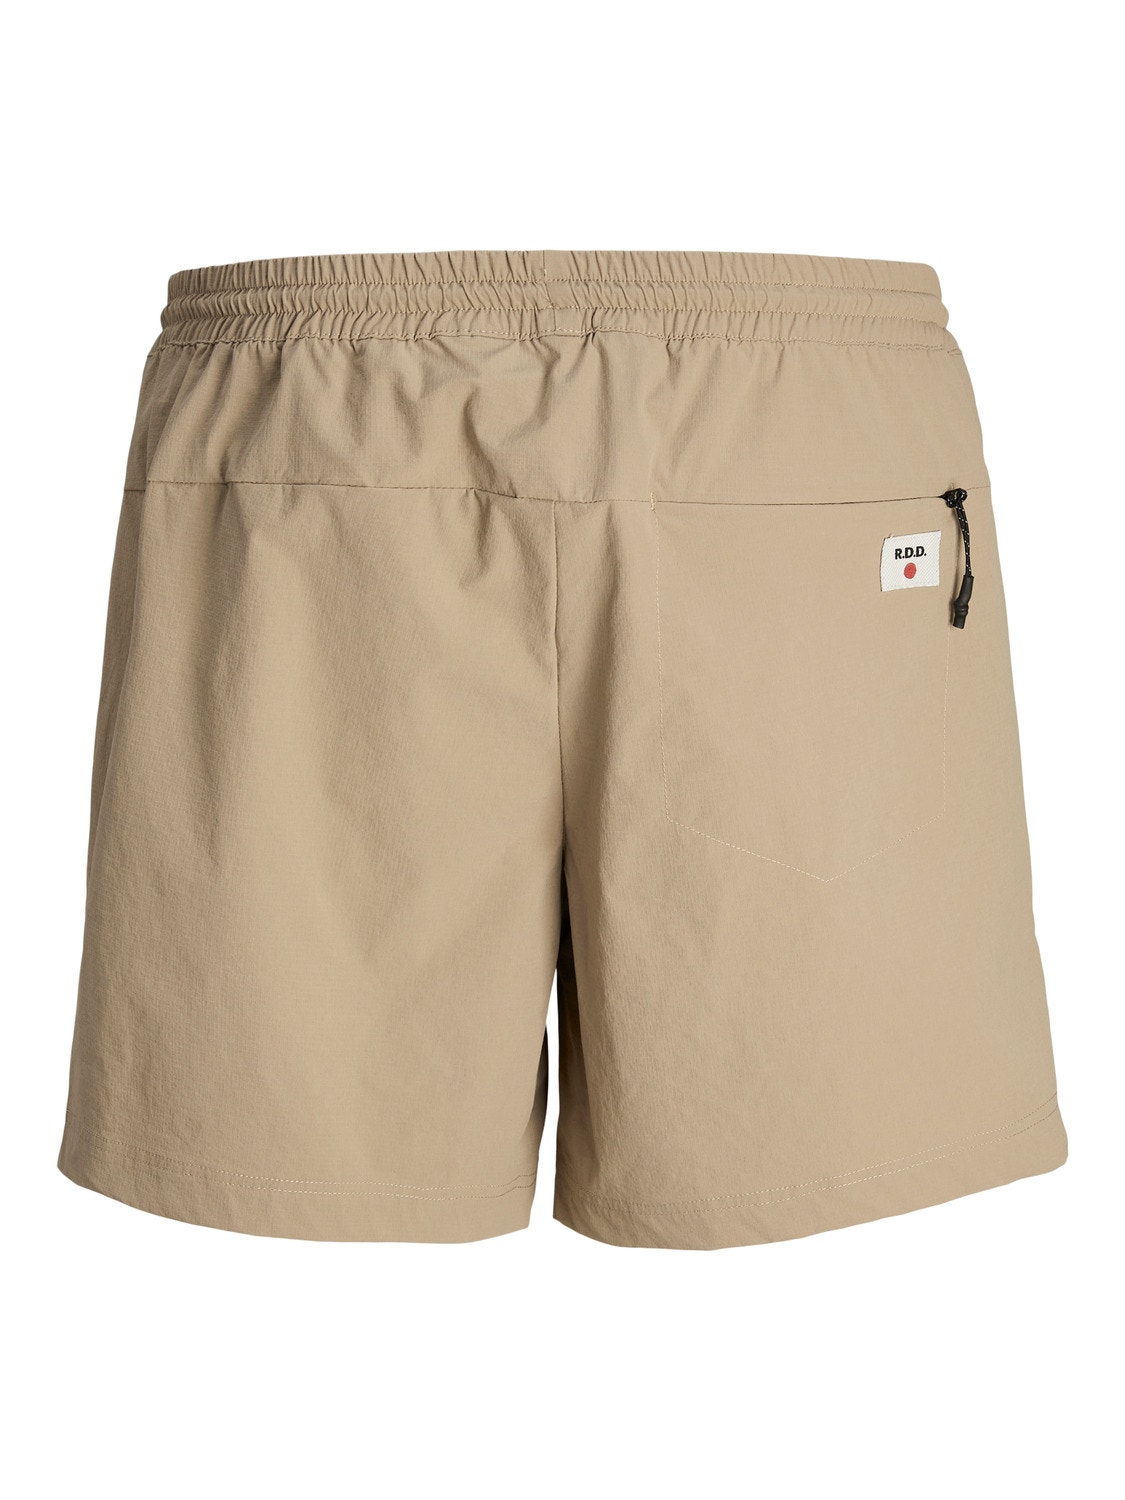 Jack & Jones RDD Regular Fit Jogger shorts -Greige - 12232640